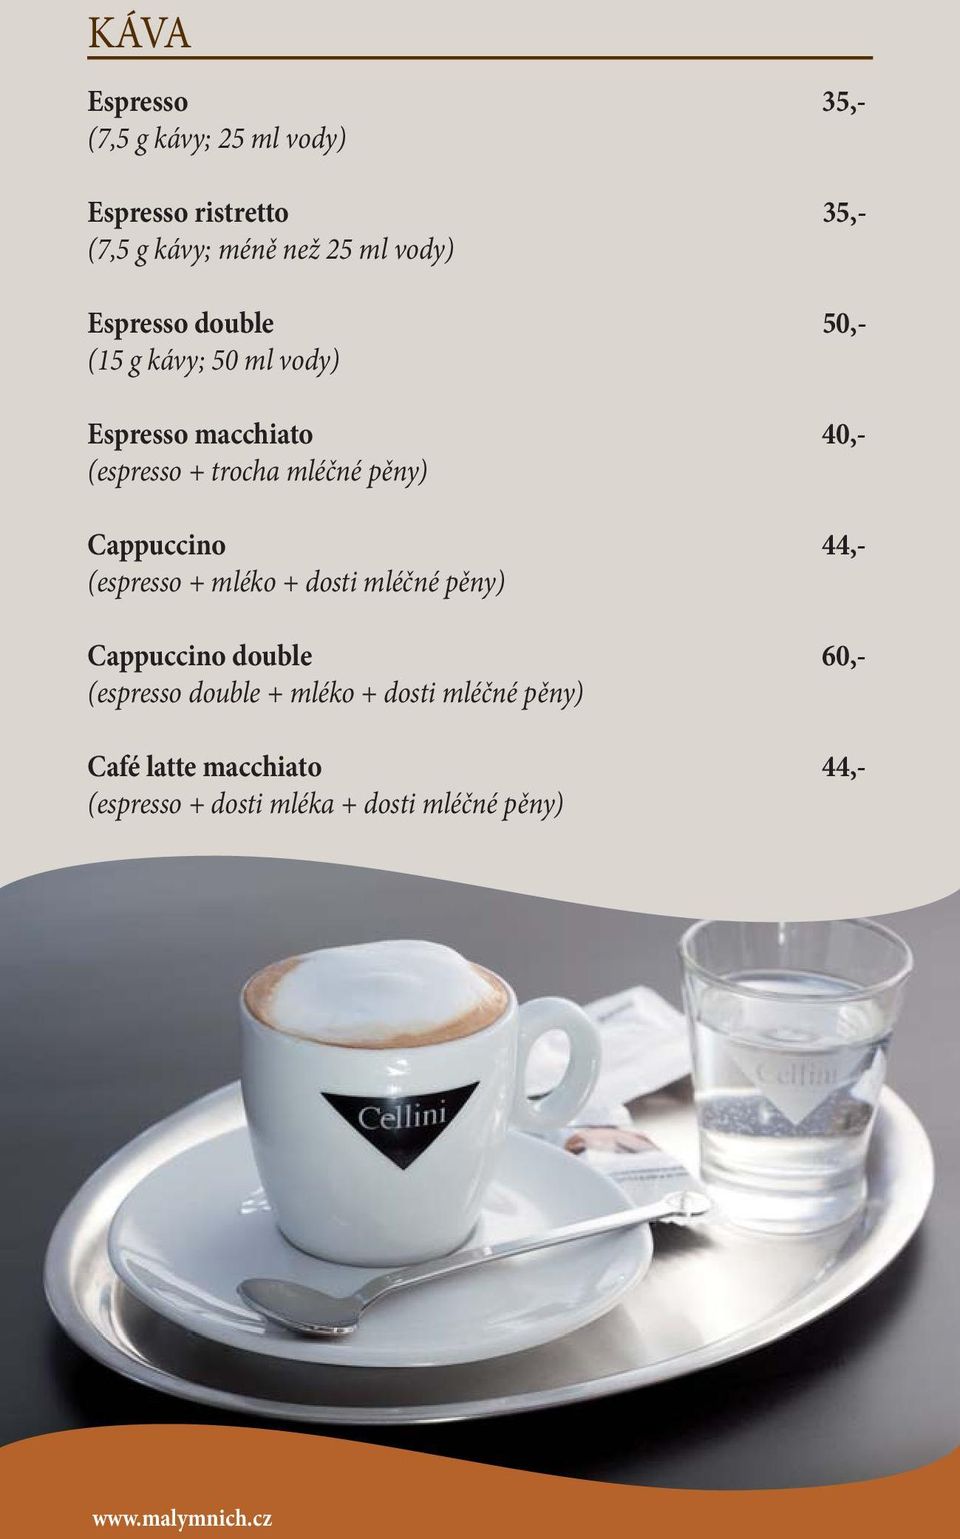 Cappuccino 44,- (espresso + mléko + dosti mléčné pěny) Cappuccino double 60,- (espresso double + mléko